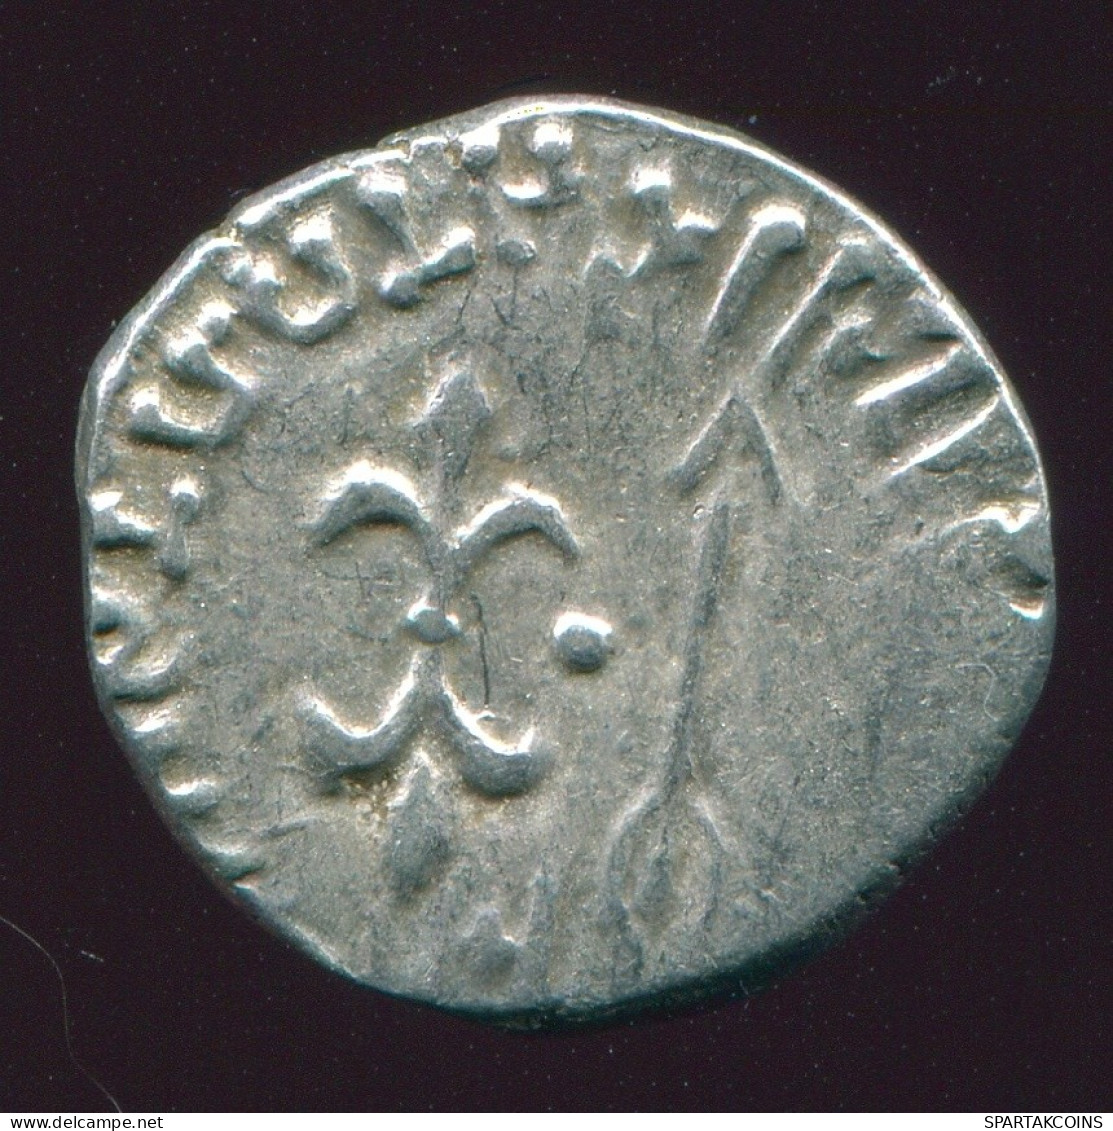 INDO-SKYTHIANS KSHATRAPAS King NAHAPANA AR Drachm 2.3g/15.4mm GRIECHISCHE Münze #GRK1601.33.D.A - Greche